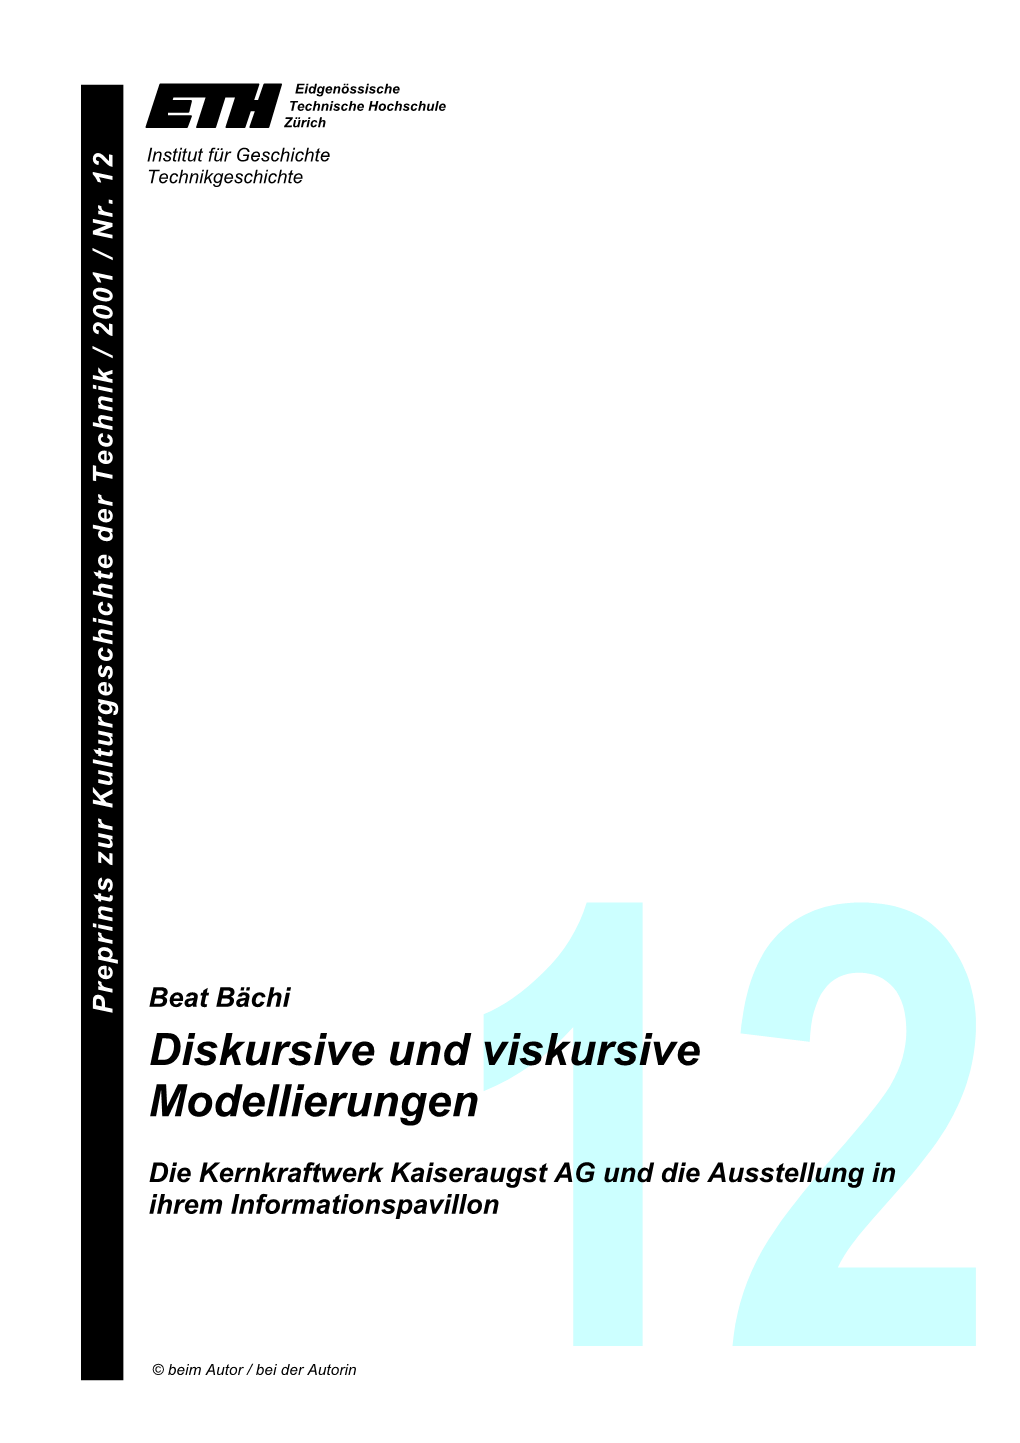 Diskursive Und Viskursive Modellierungen. Die Kernkraftwerk Kaiseraugst AG Und Die Ausstellung in Ihrem Informationspavillon